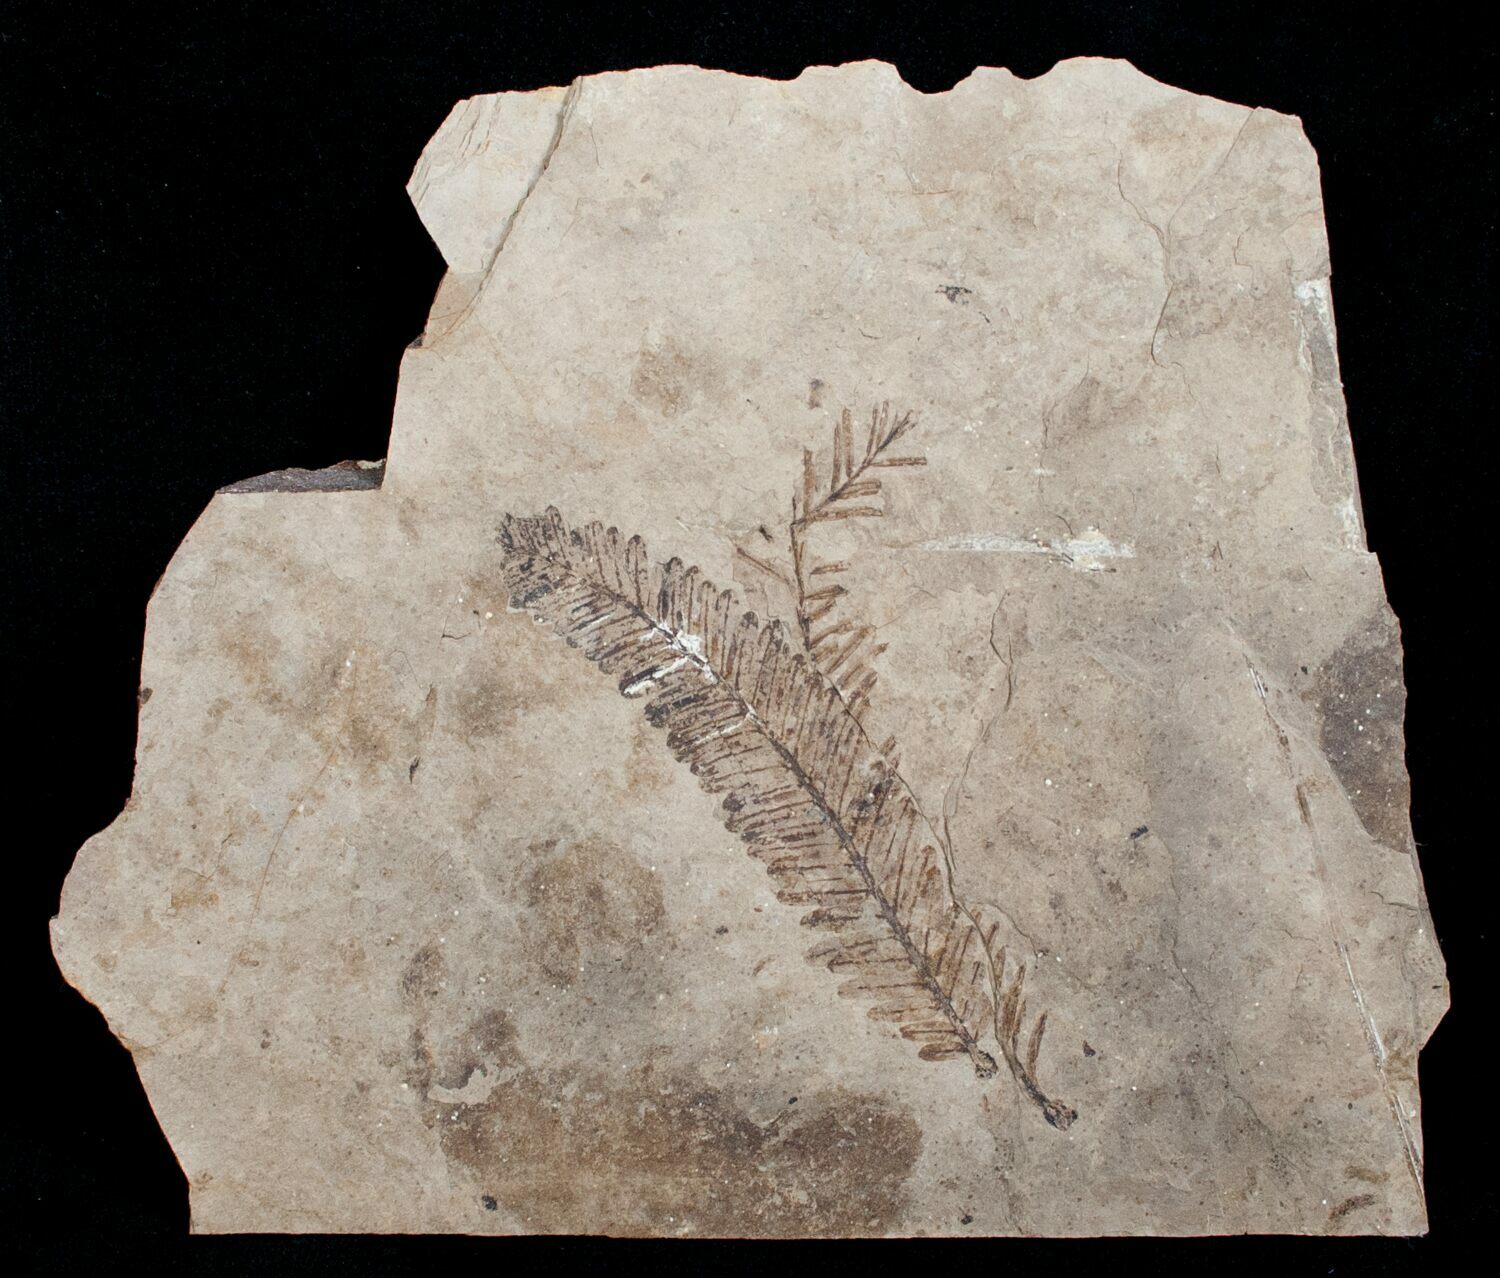 metasequoia fossils